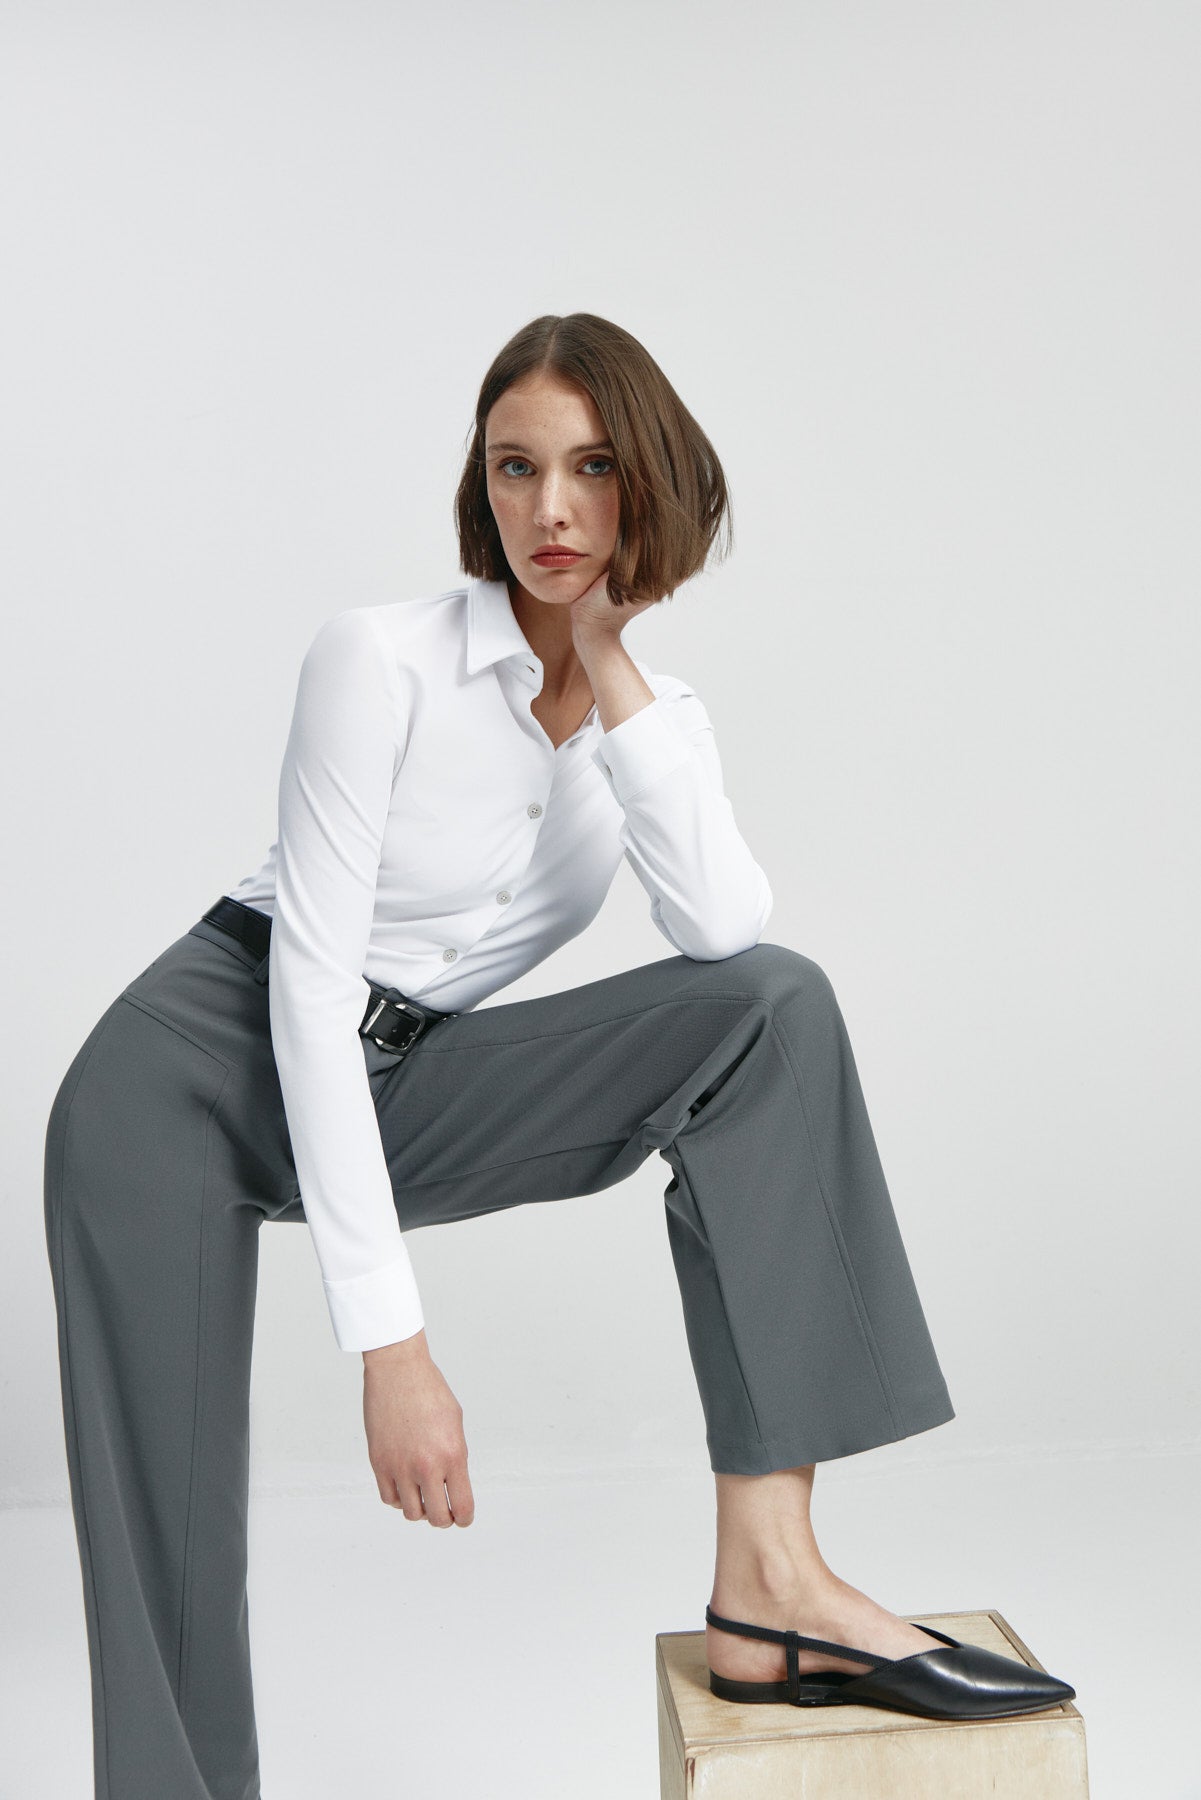 Pantalón de mujer gris de Sepiia, cómodo y resistente, ideal para cualquier ocasión. Foto cuerpo entero